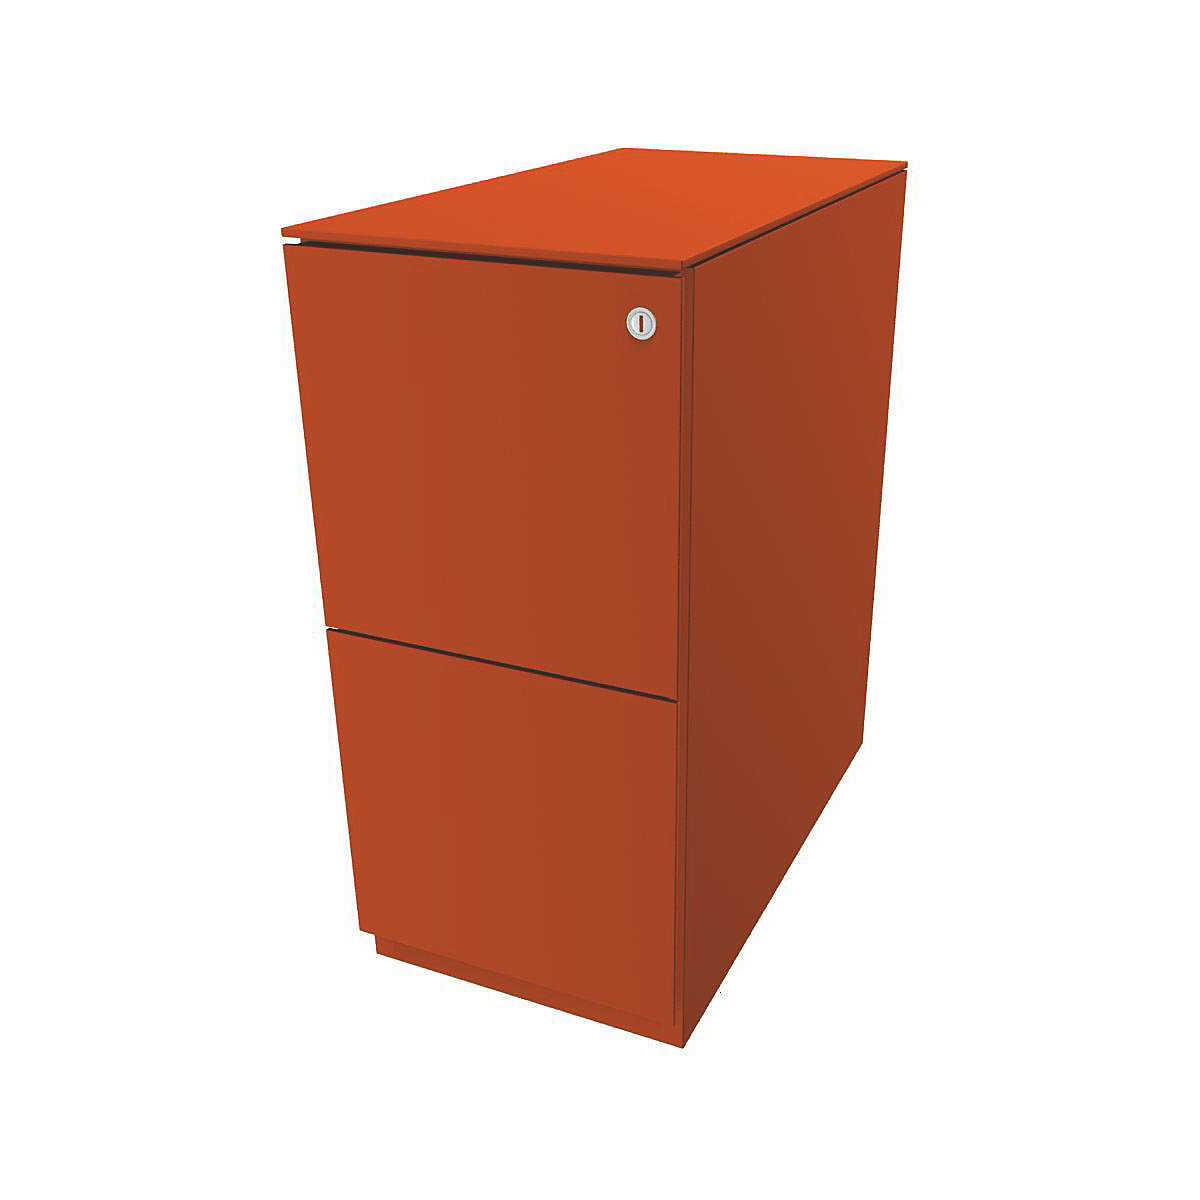 Pojízdný kontejner Note™, se 2 kartotékami pro závěsné složky – BISLEY, v x š 652 x 300 mm, s horní krycí deskou, oranžová-15